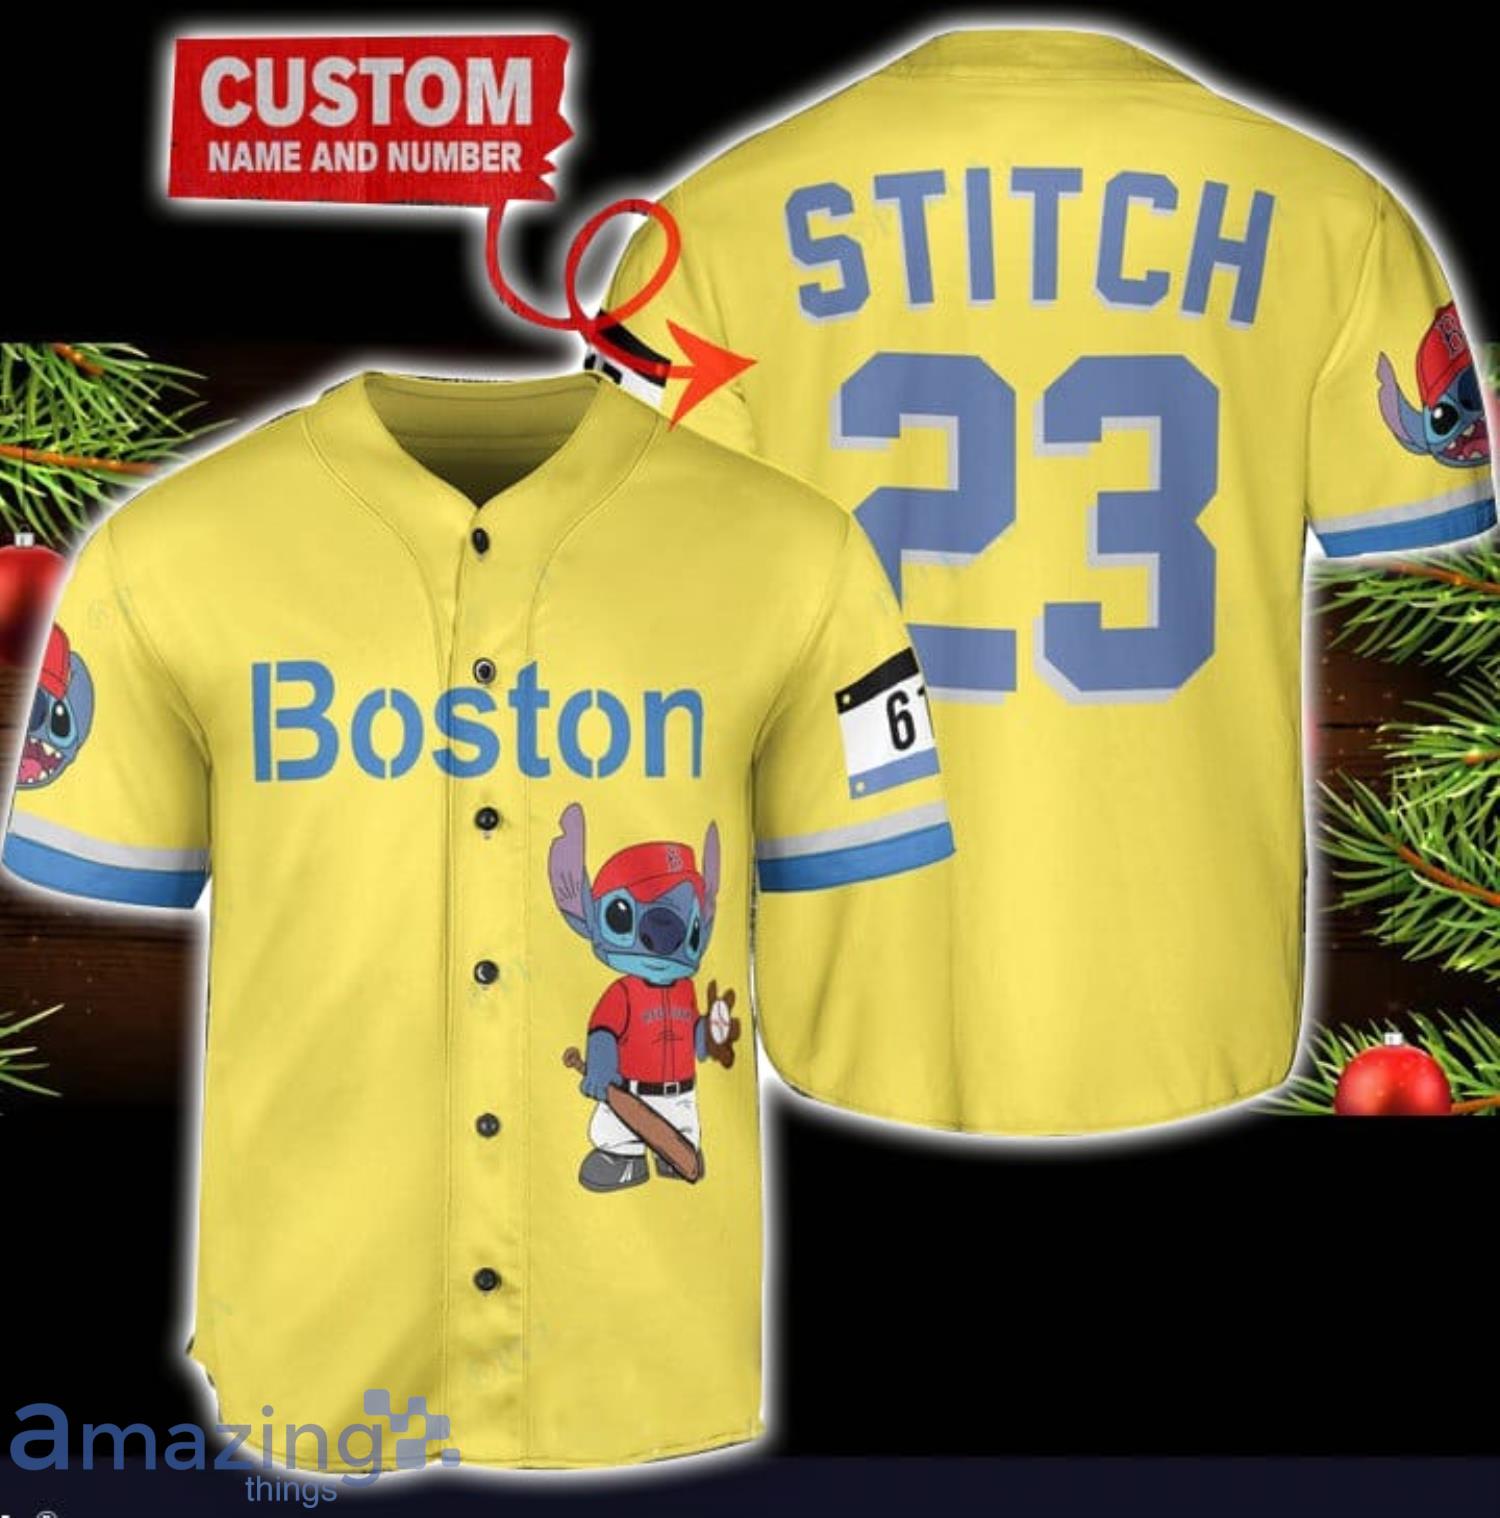 Boston Red Sox Personalized Name MLB Fans Stitch Baseball Jersey Shirt  Yellow